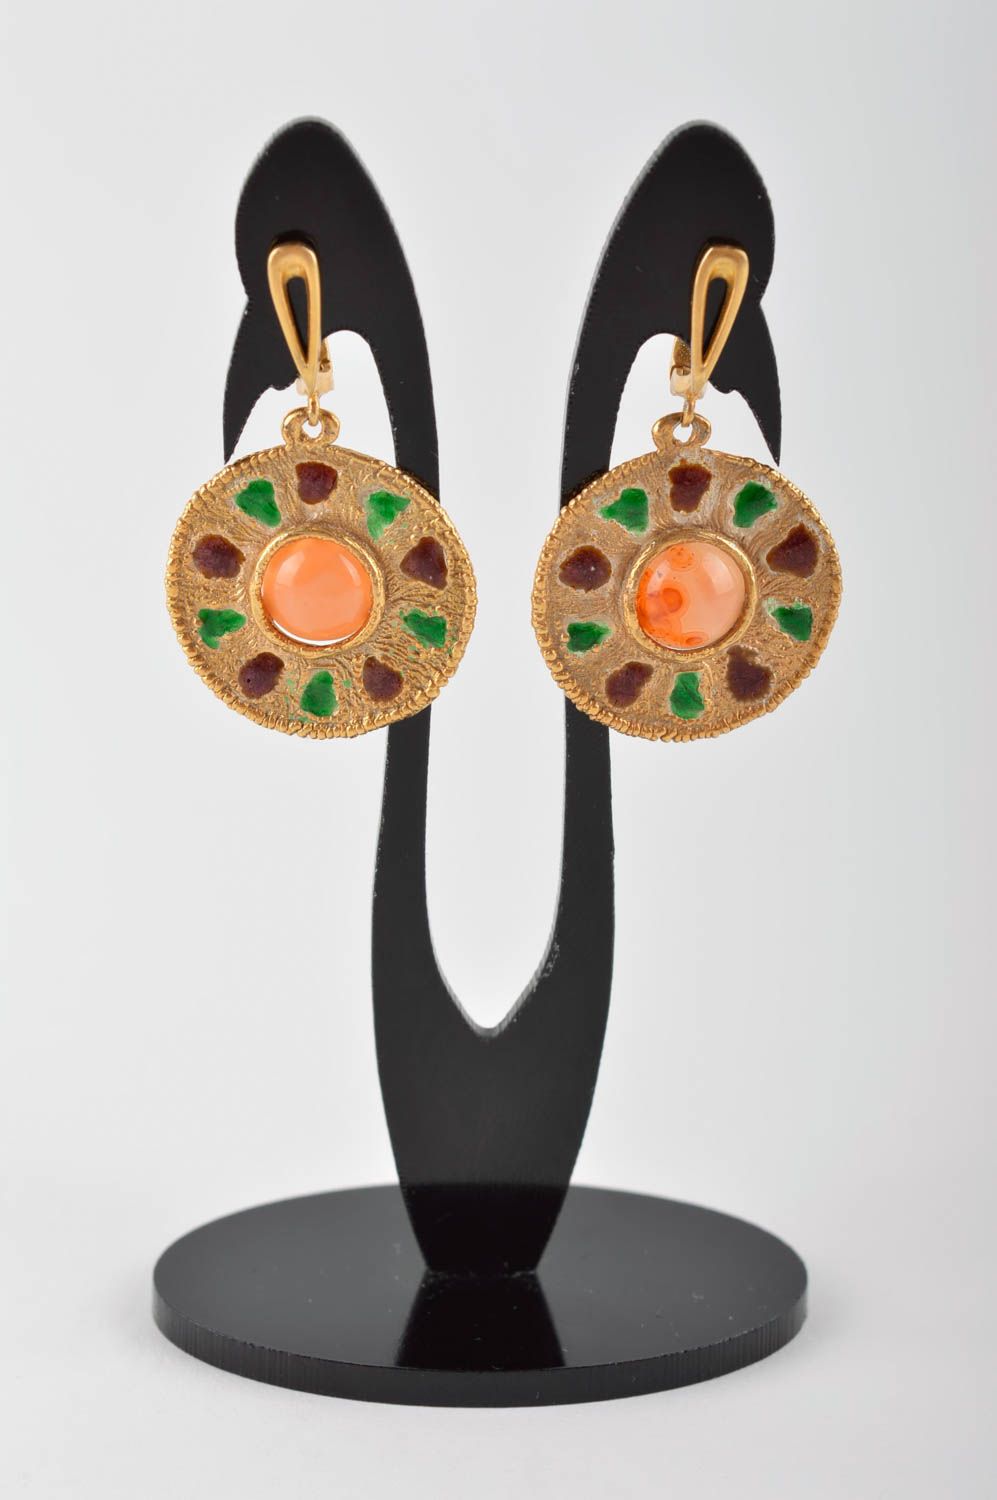 Unusual handmade metal earrings gemstone earrings artisan jewelry designs photo 2